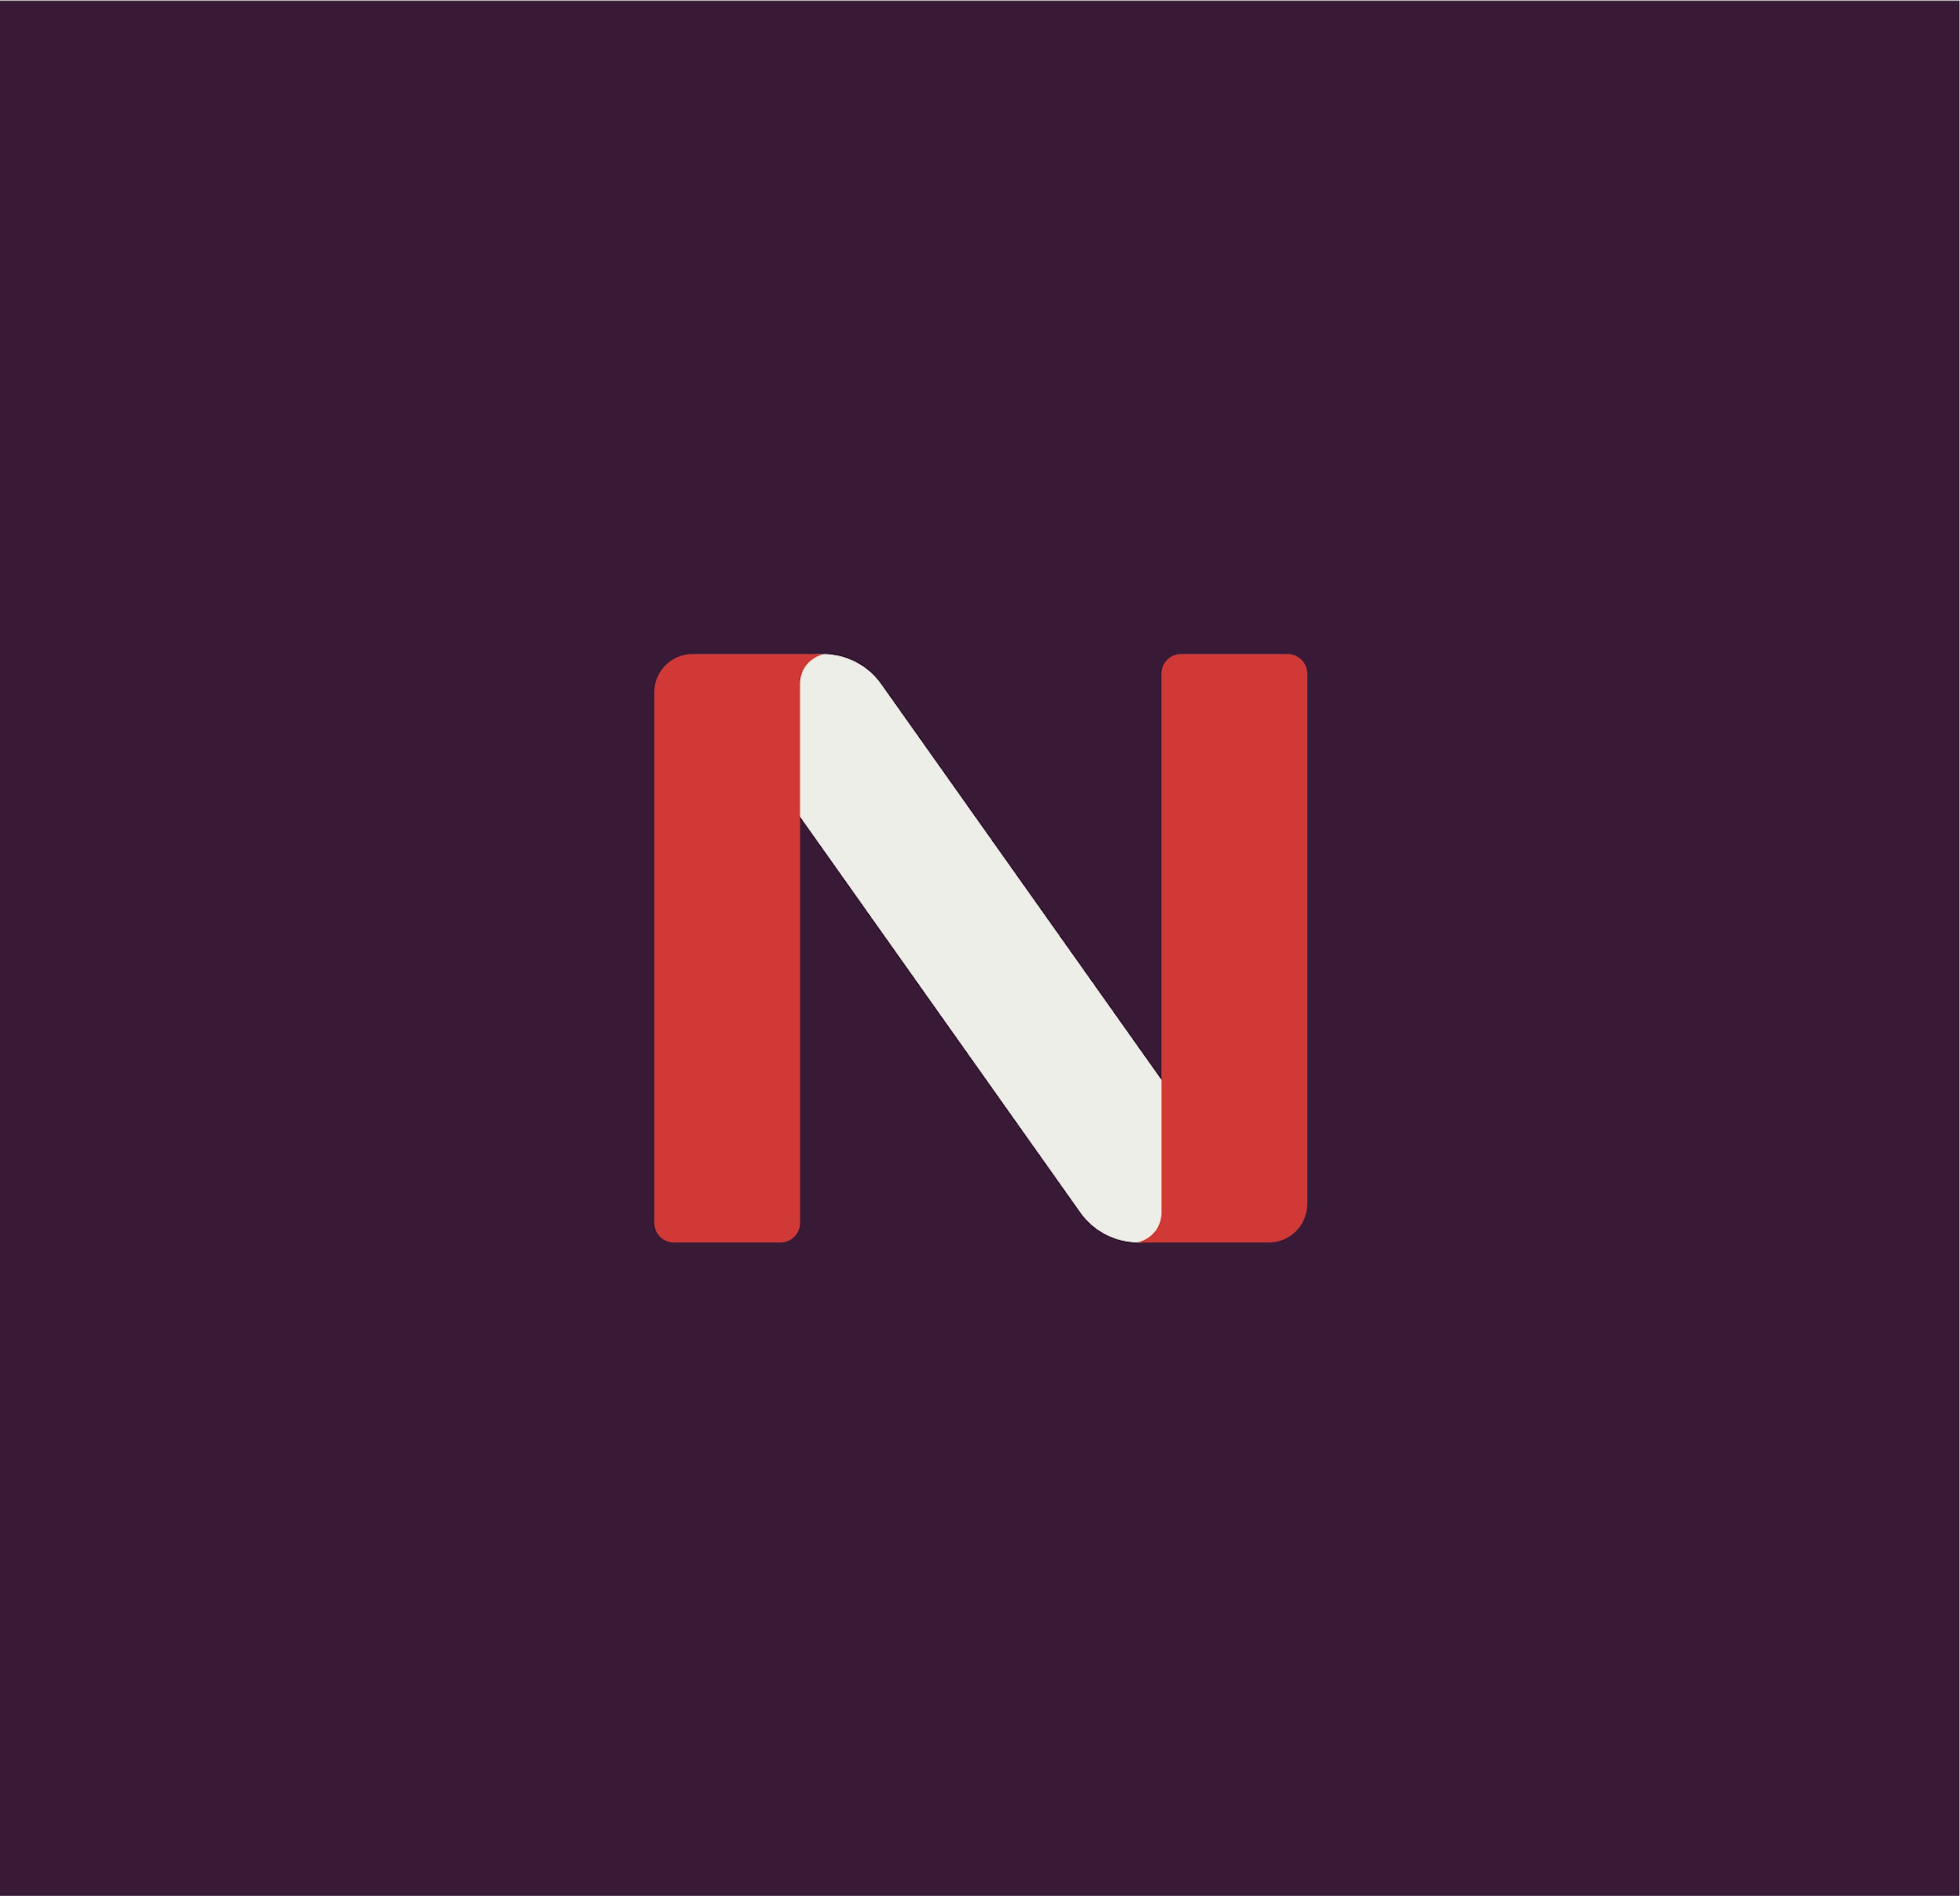 Netstock Logo